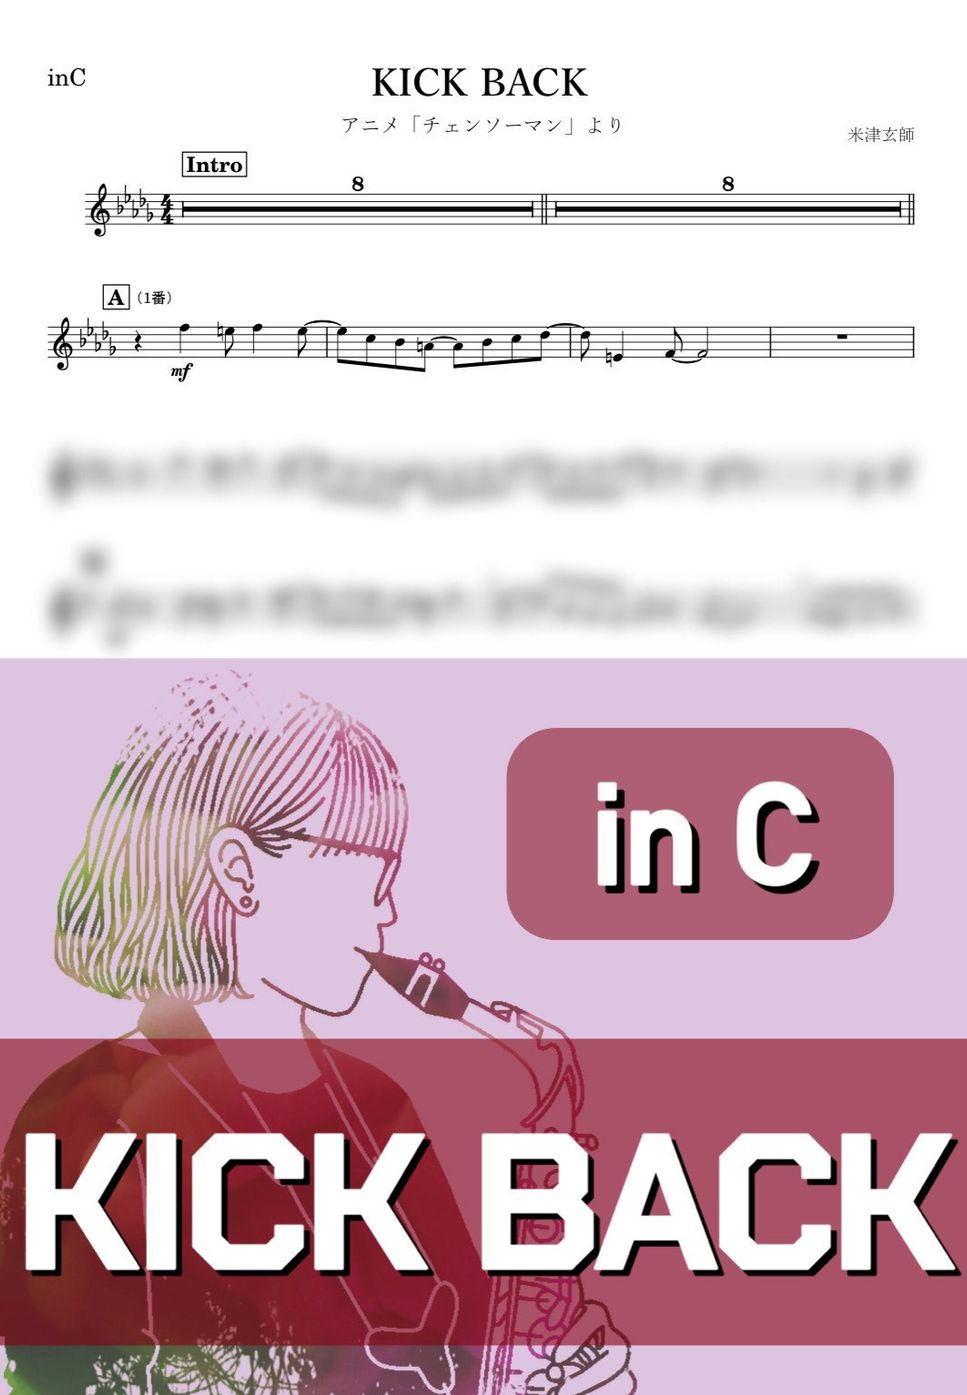 米津玄師 - KICK BACK (C) by kanamusic